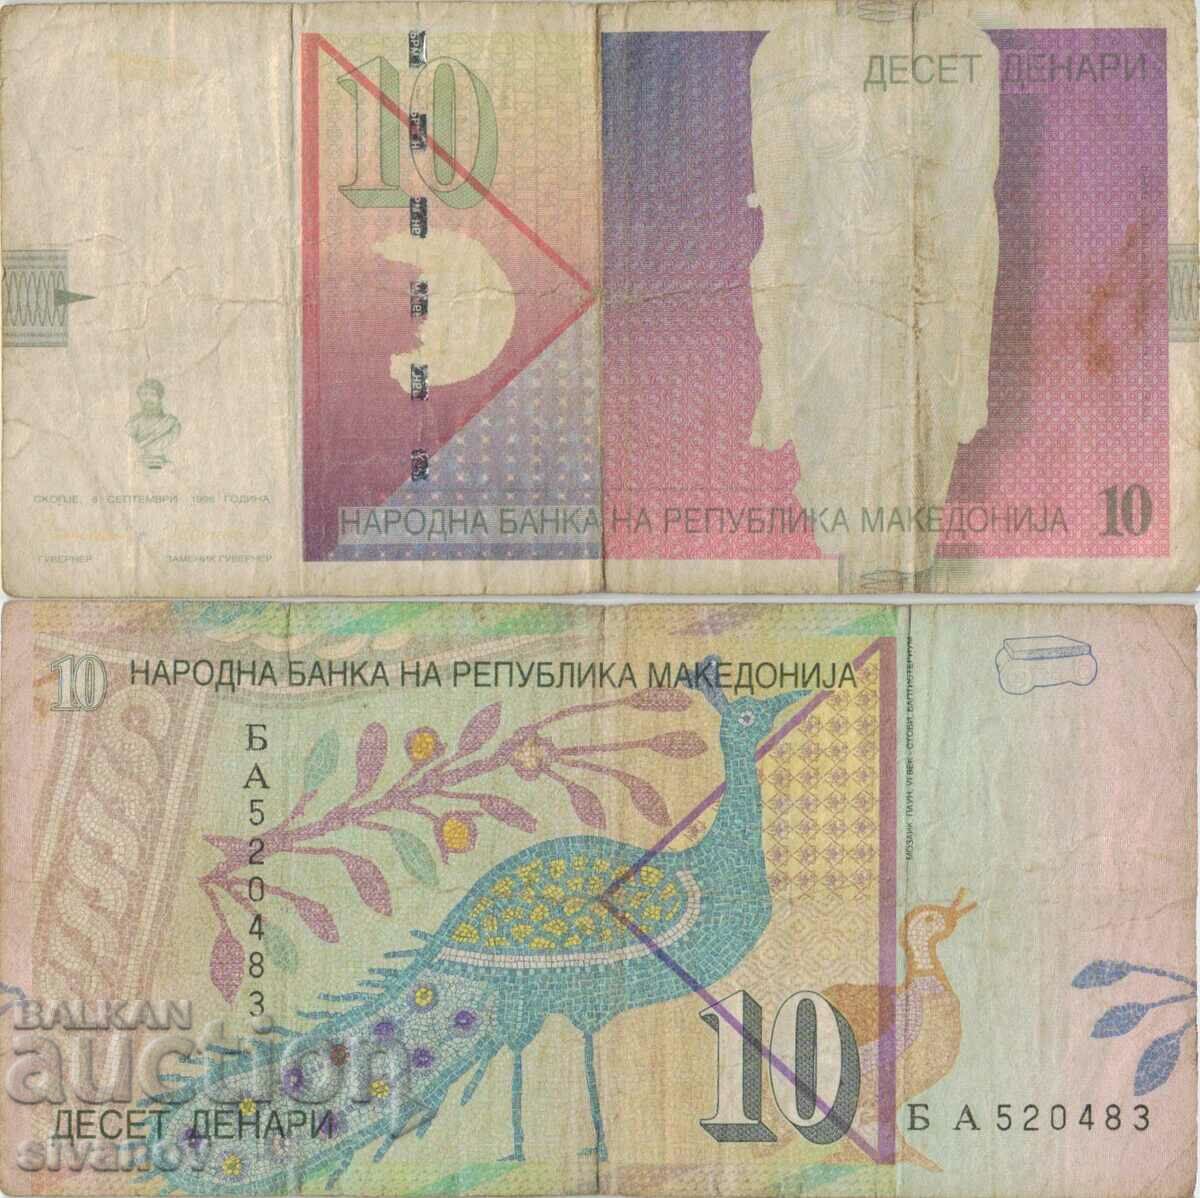 Macedonia 10 denari 1996 bancnota #5225